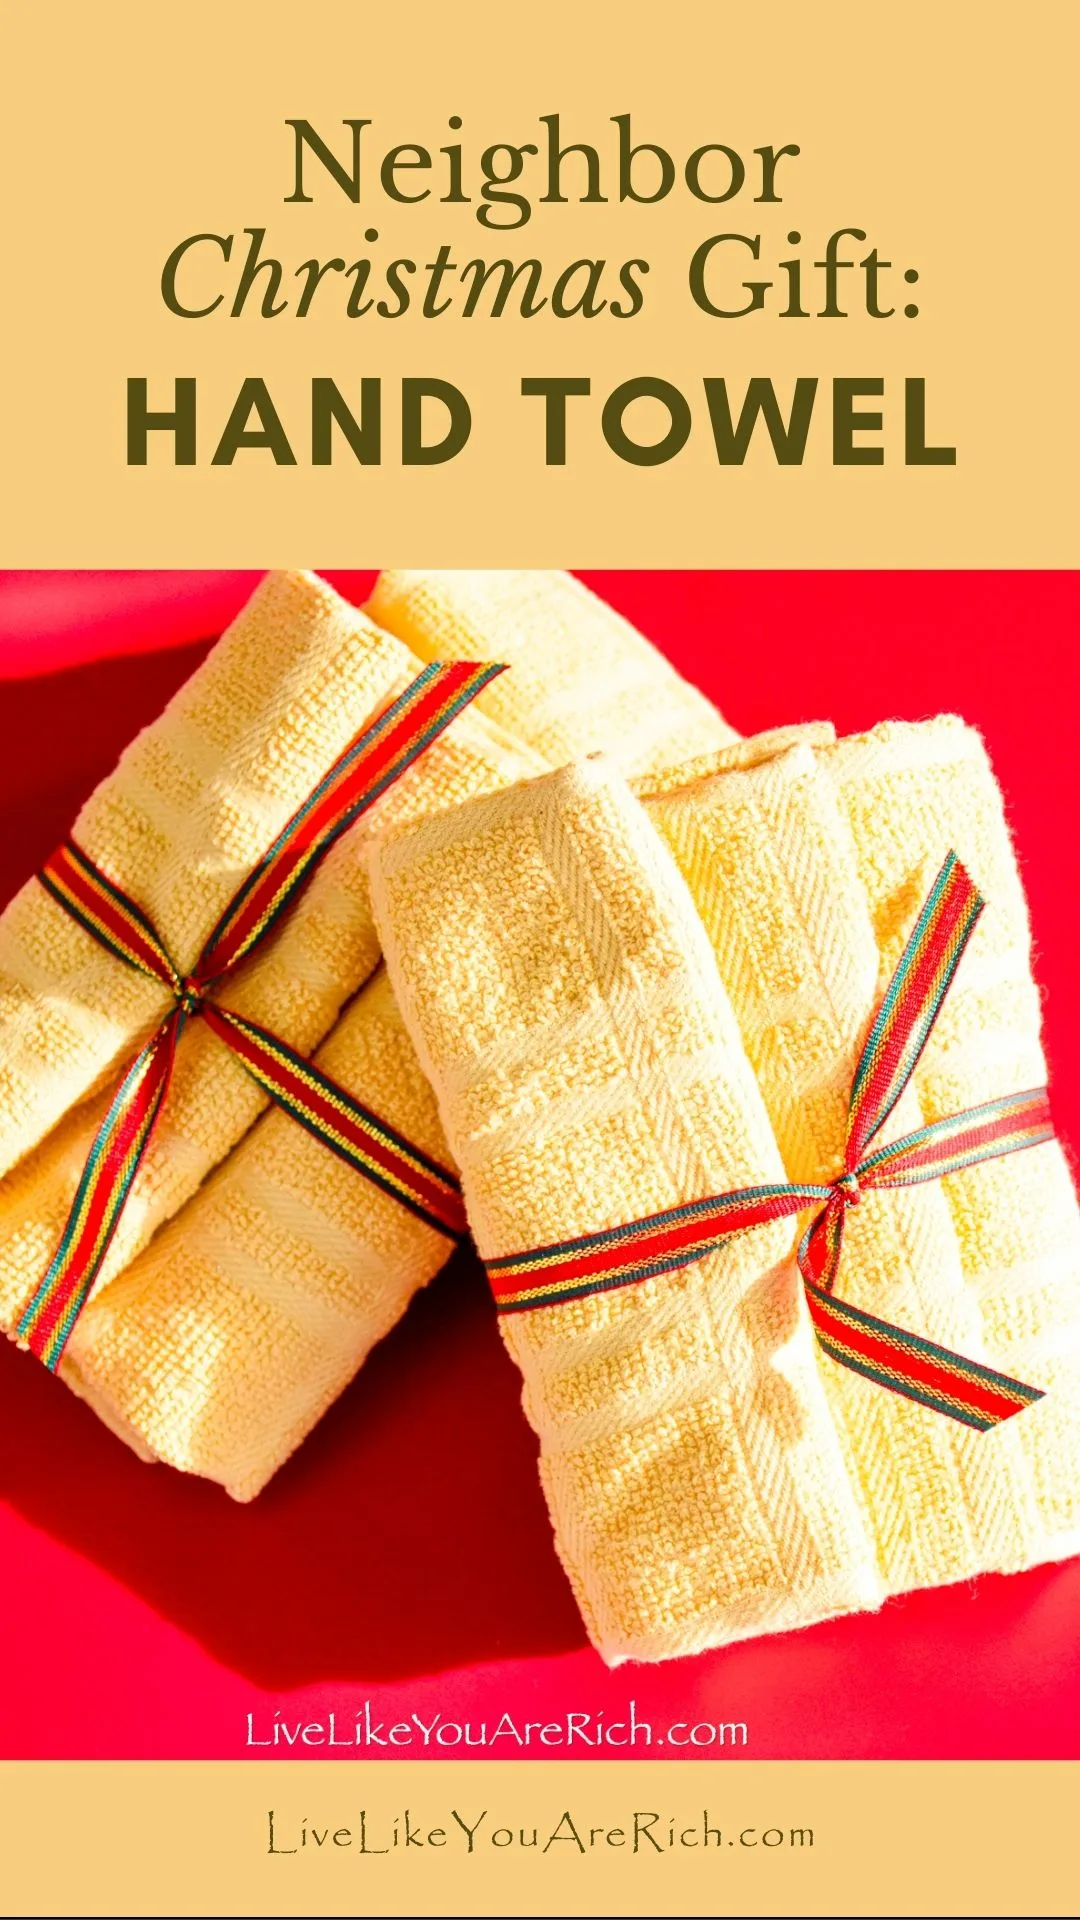 Neighbor Christmas Gift: Hand Towel